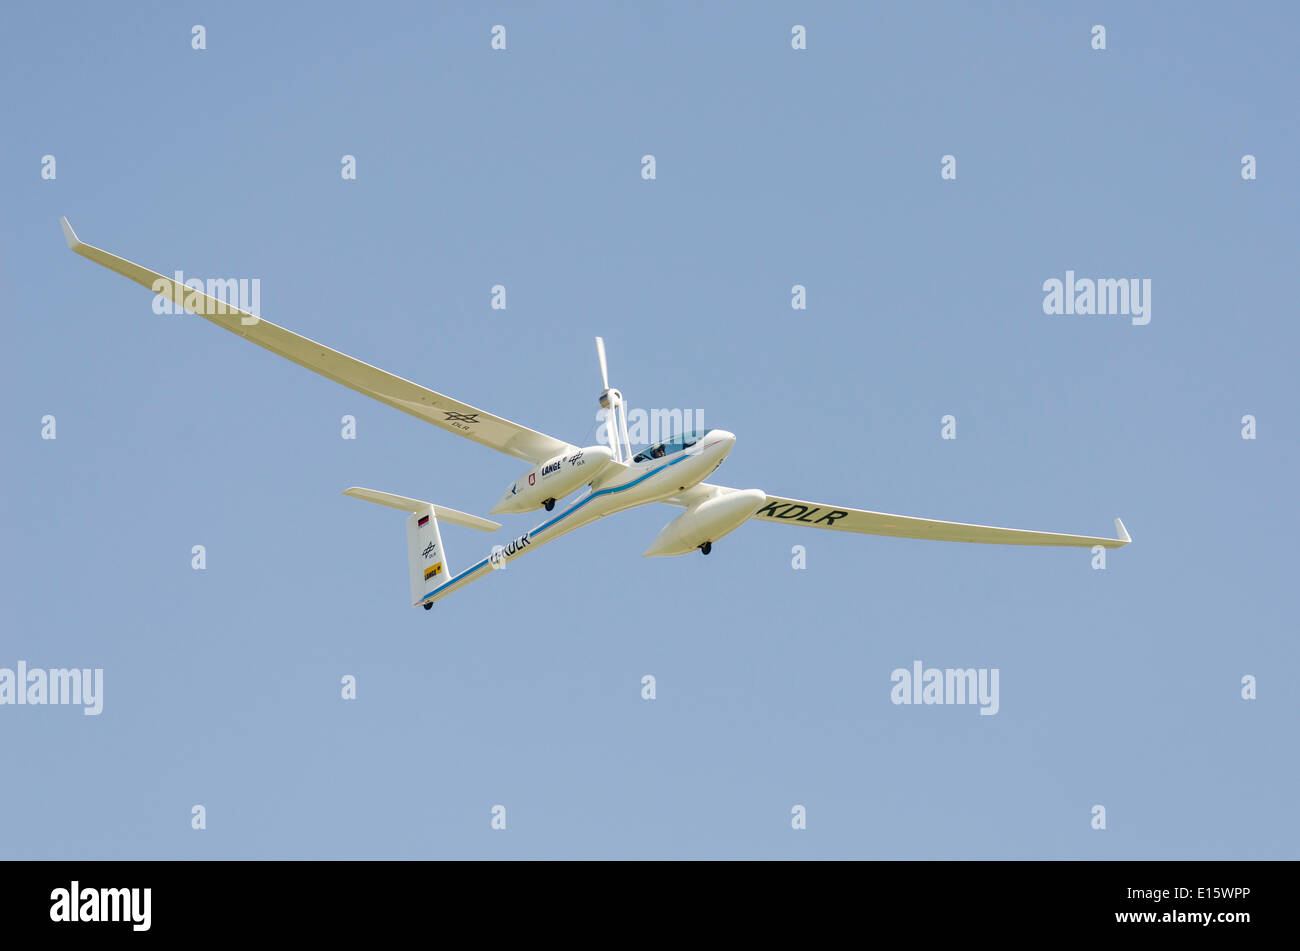 Antares DLR-H2 de pila de combustible en vuelo de avión. Primer avión tripulado girando sobre la potencia de las pilas de combustible. Foto de stock